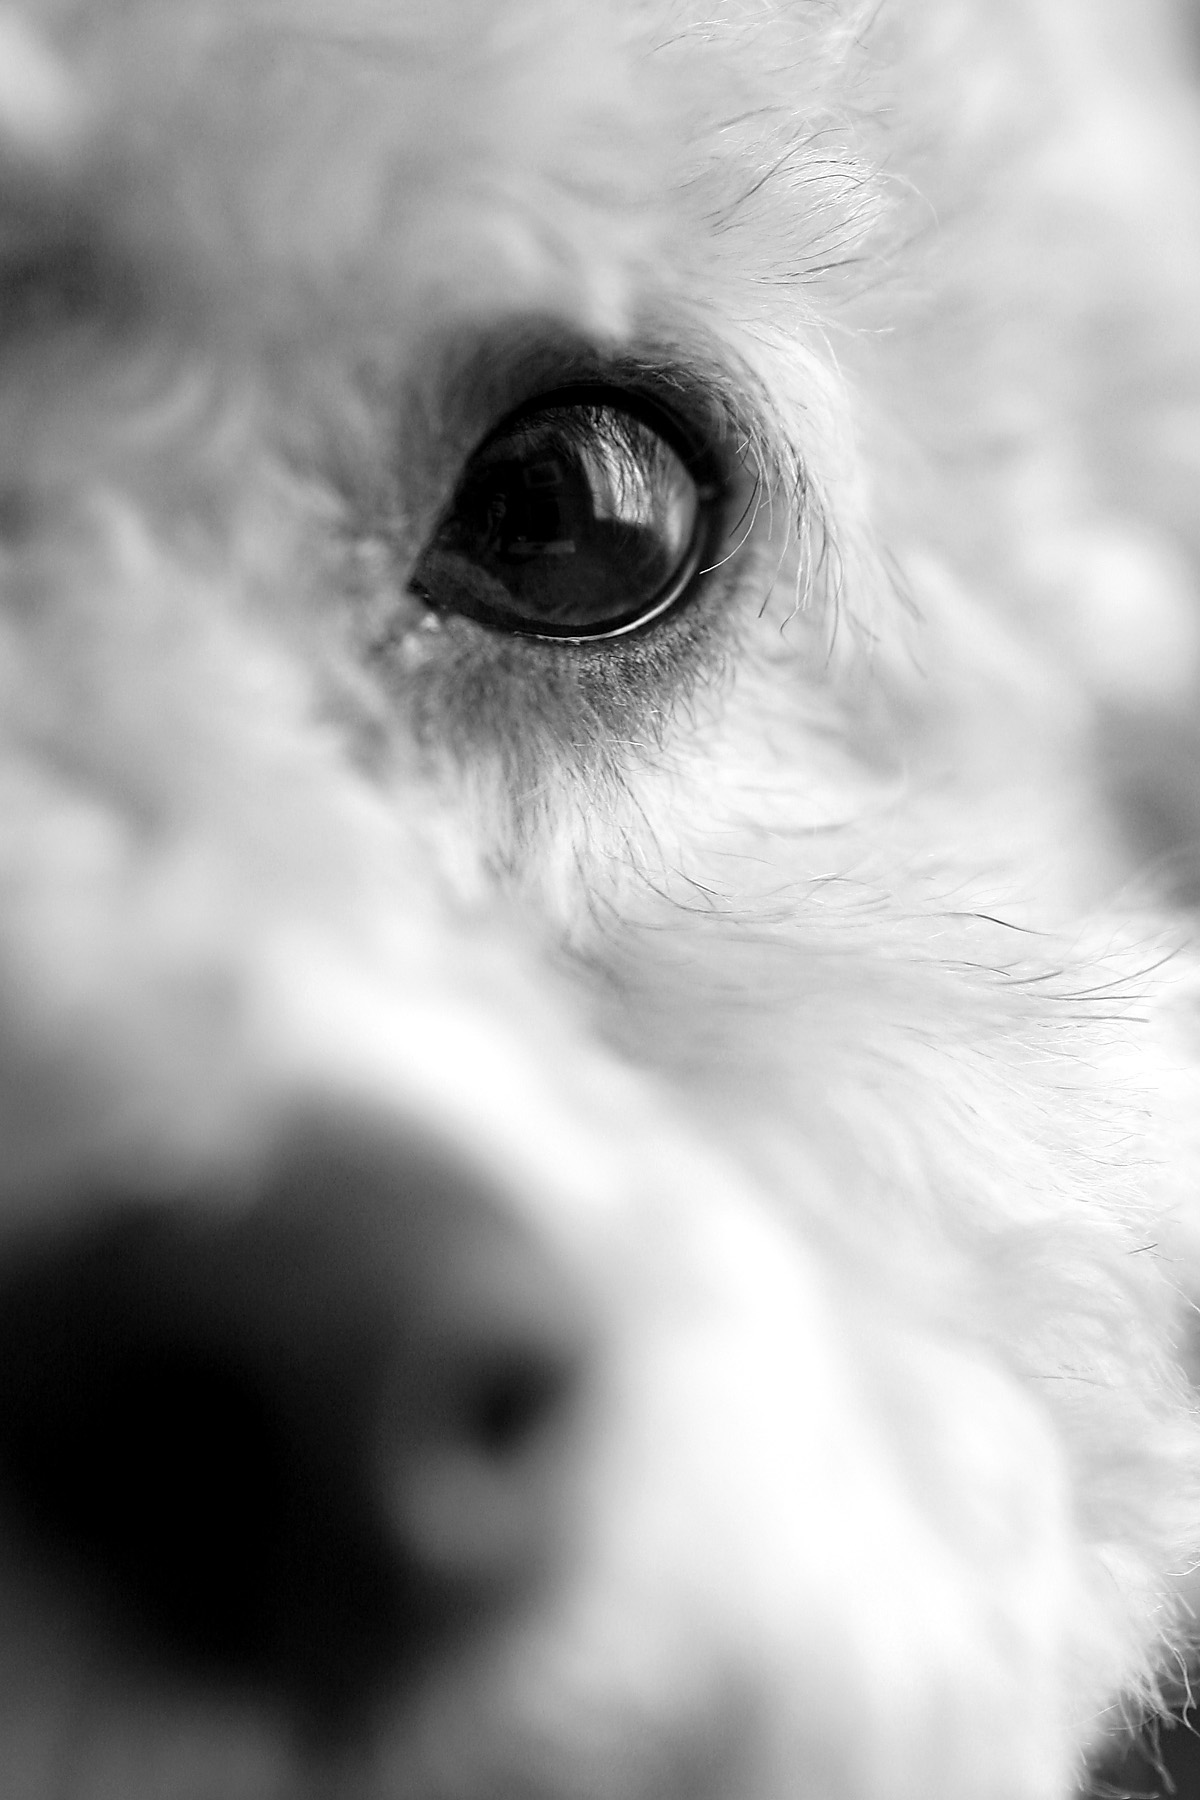 Eye of the dog photo